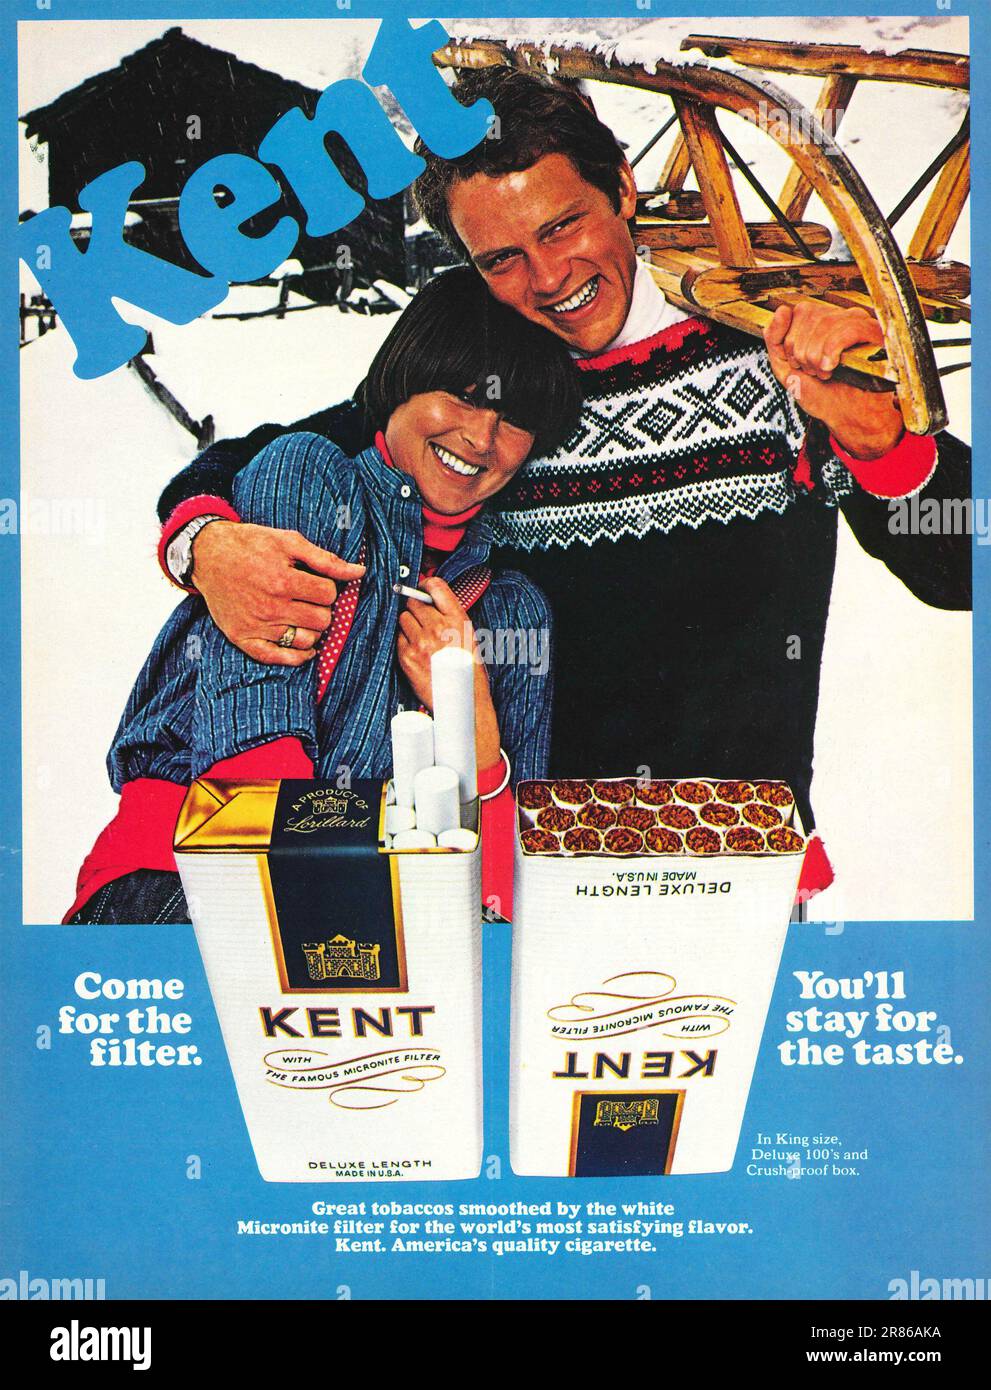 PUBLICITÉ KENT cigarettes dans un magazine 1978. Venez pour le filtre, vous resterez pour la campagne Taste Kent. Banque D'Images